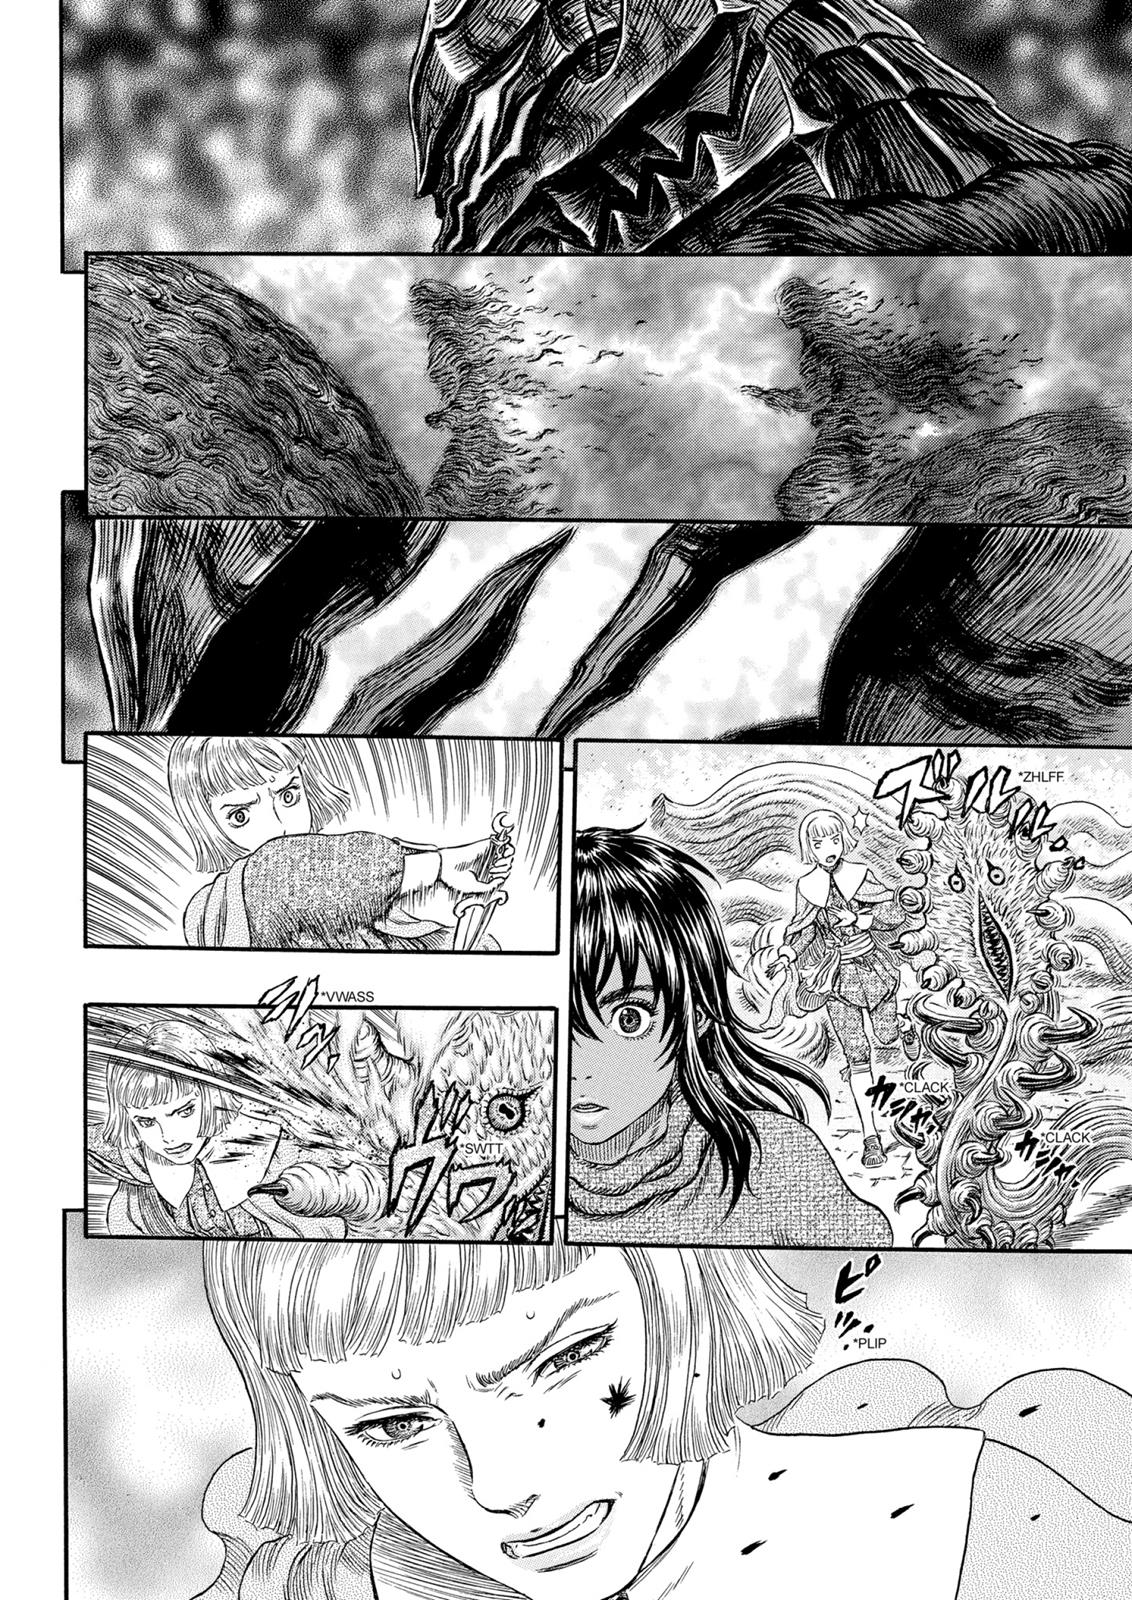 Berserk Manga Chapter 316 image 26